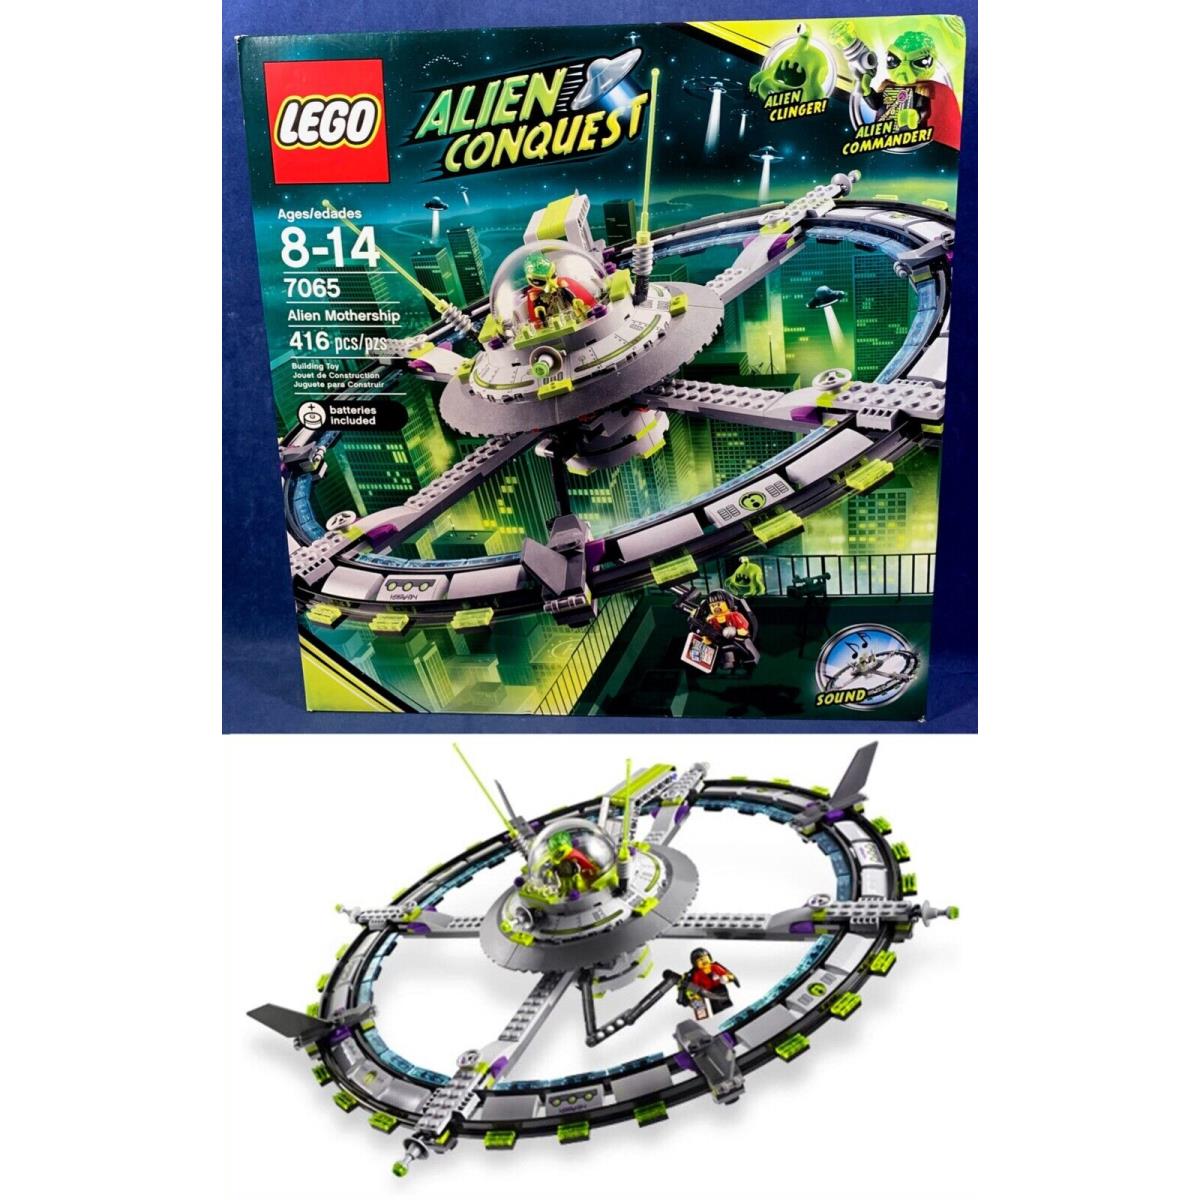 Alien Mothership Lego 7065 Alien Conquest Clinger Spaceship Ufo - Sounds